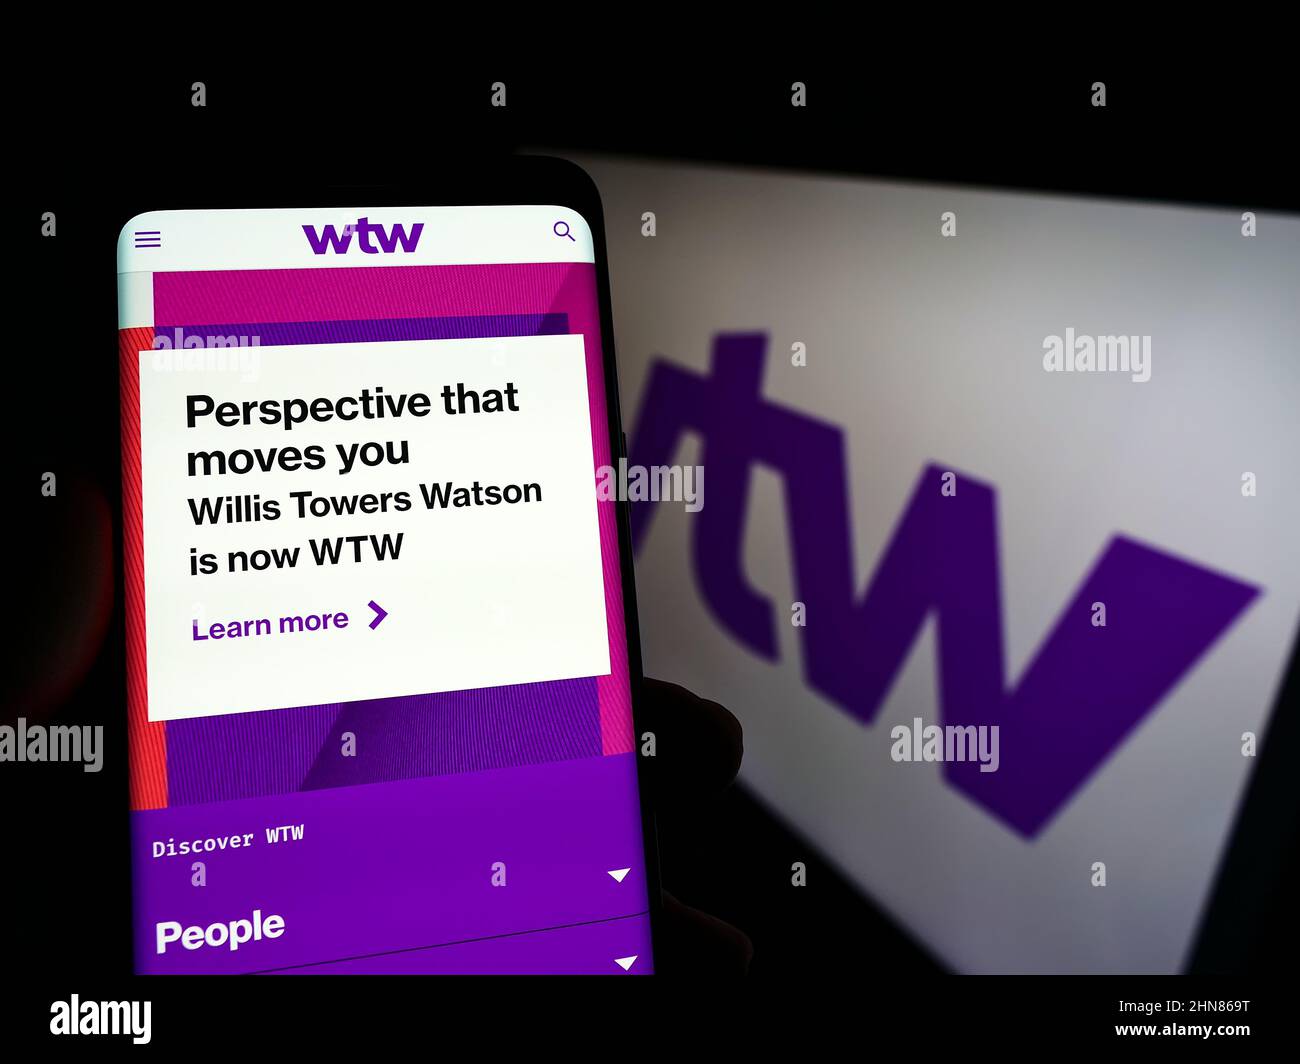 Persona che detiene smartphone con sito web della società finanziaria Willis Towers Watson plc (WTW) sullo schermo con logo. Concentrarsi sul centro del display del telefono. Foto Stock